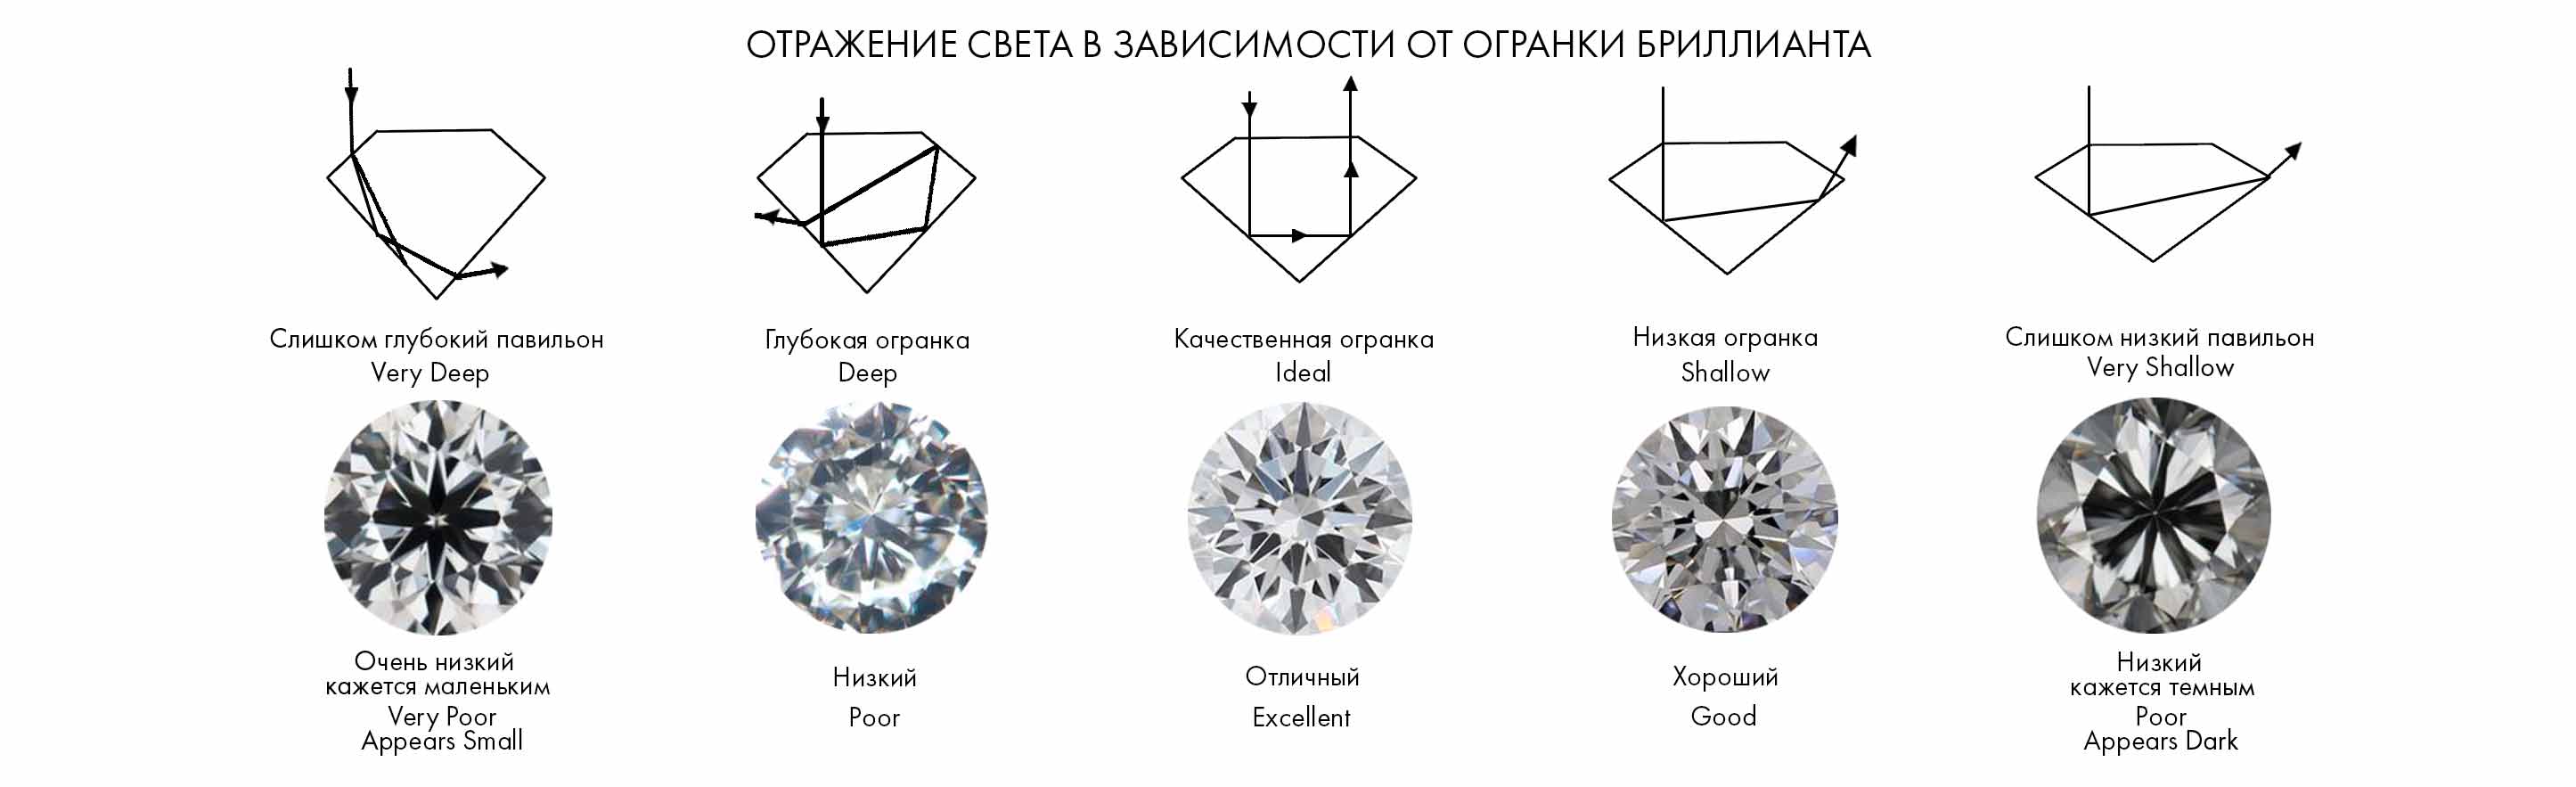 Огранка-отражение света бриллианте